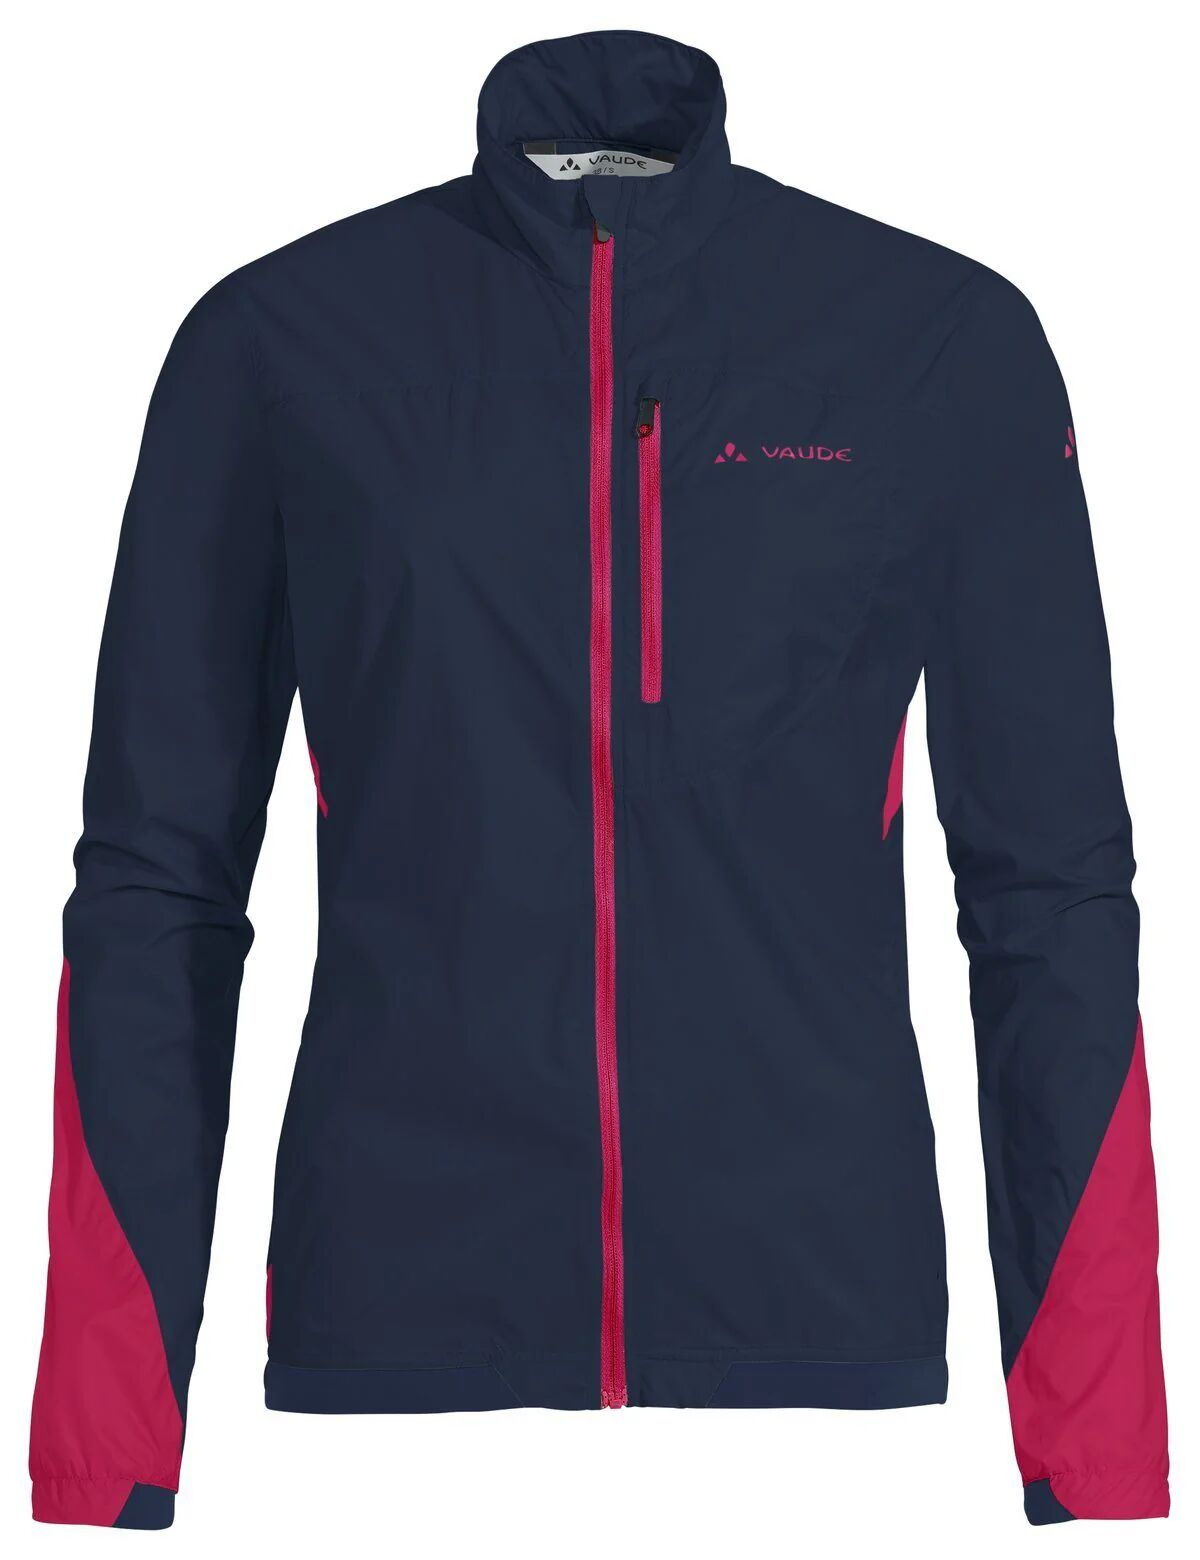 Vaude Women's Moab UL Jacket II - Ultralight wind proof jacket for outdoor sports, eclipse / 46